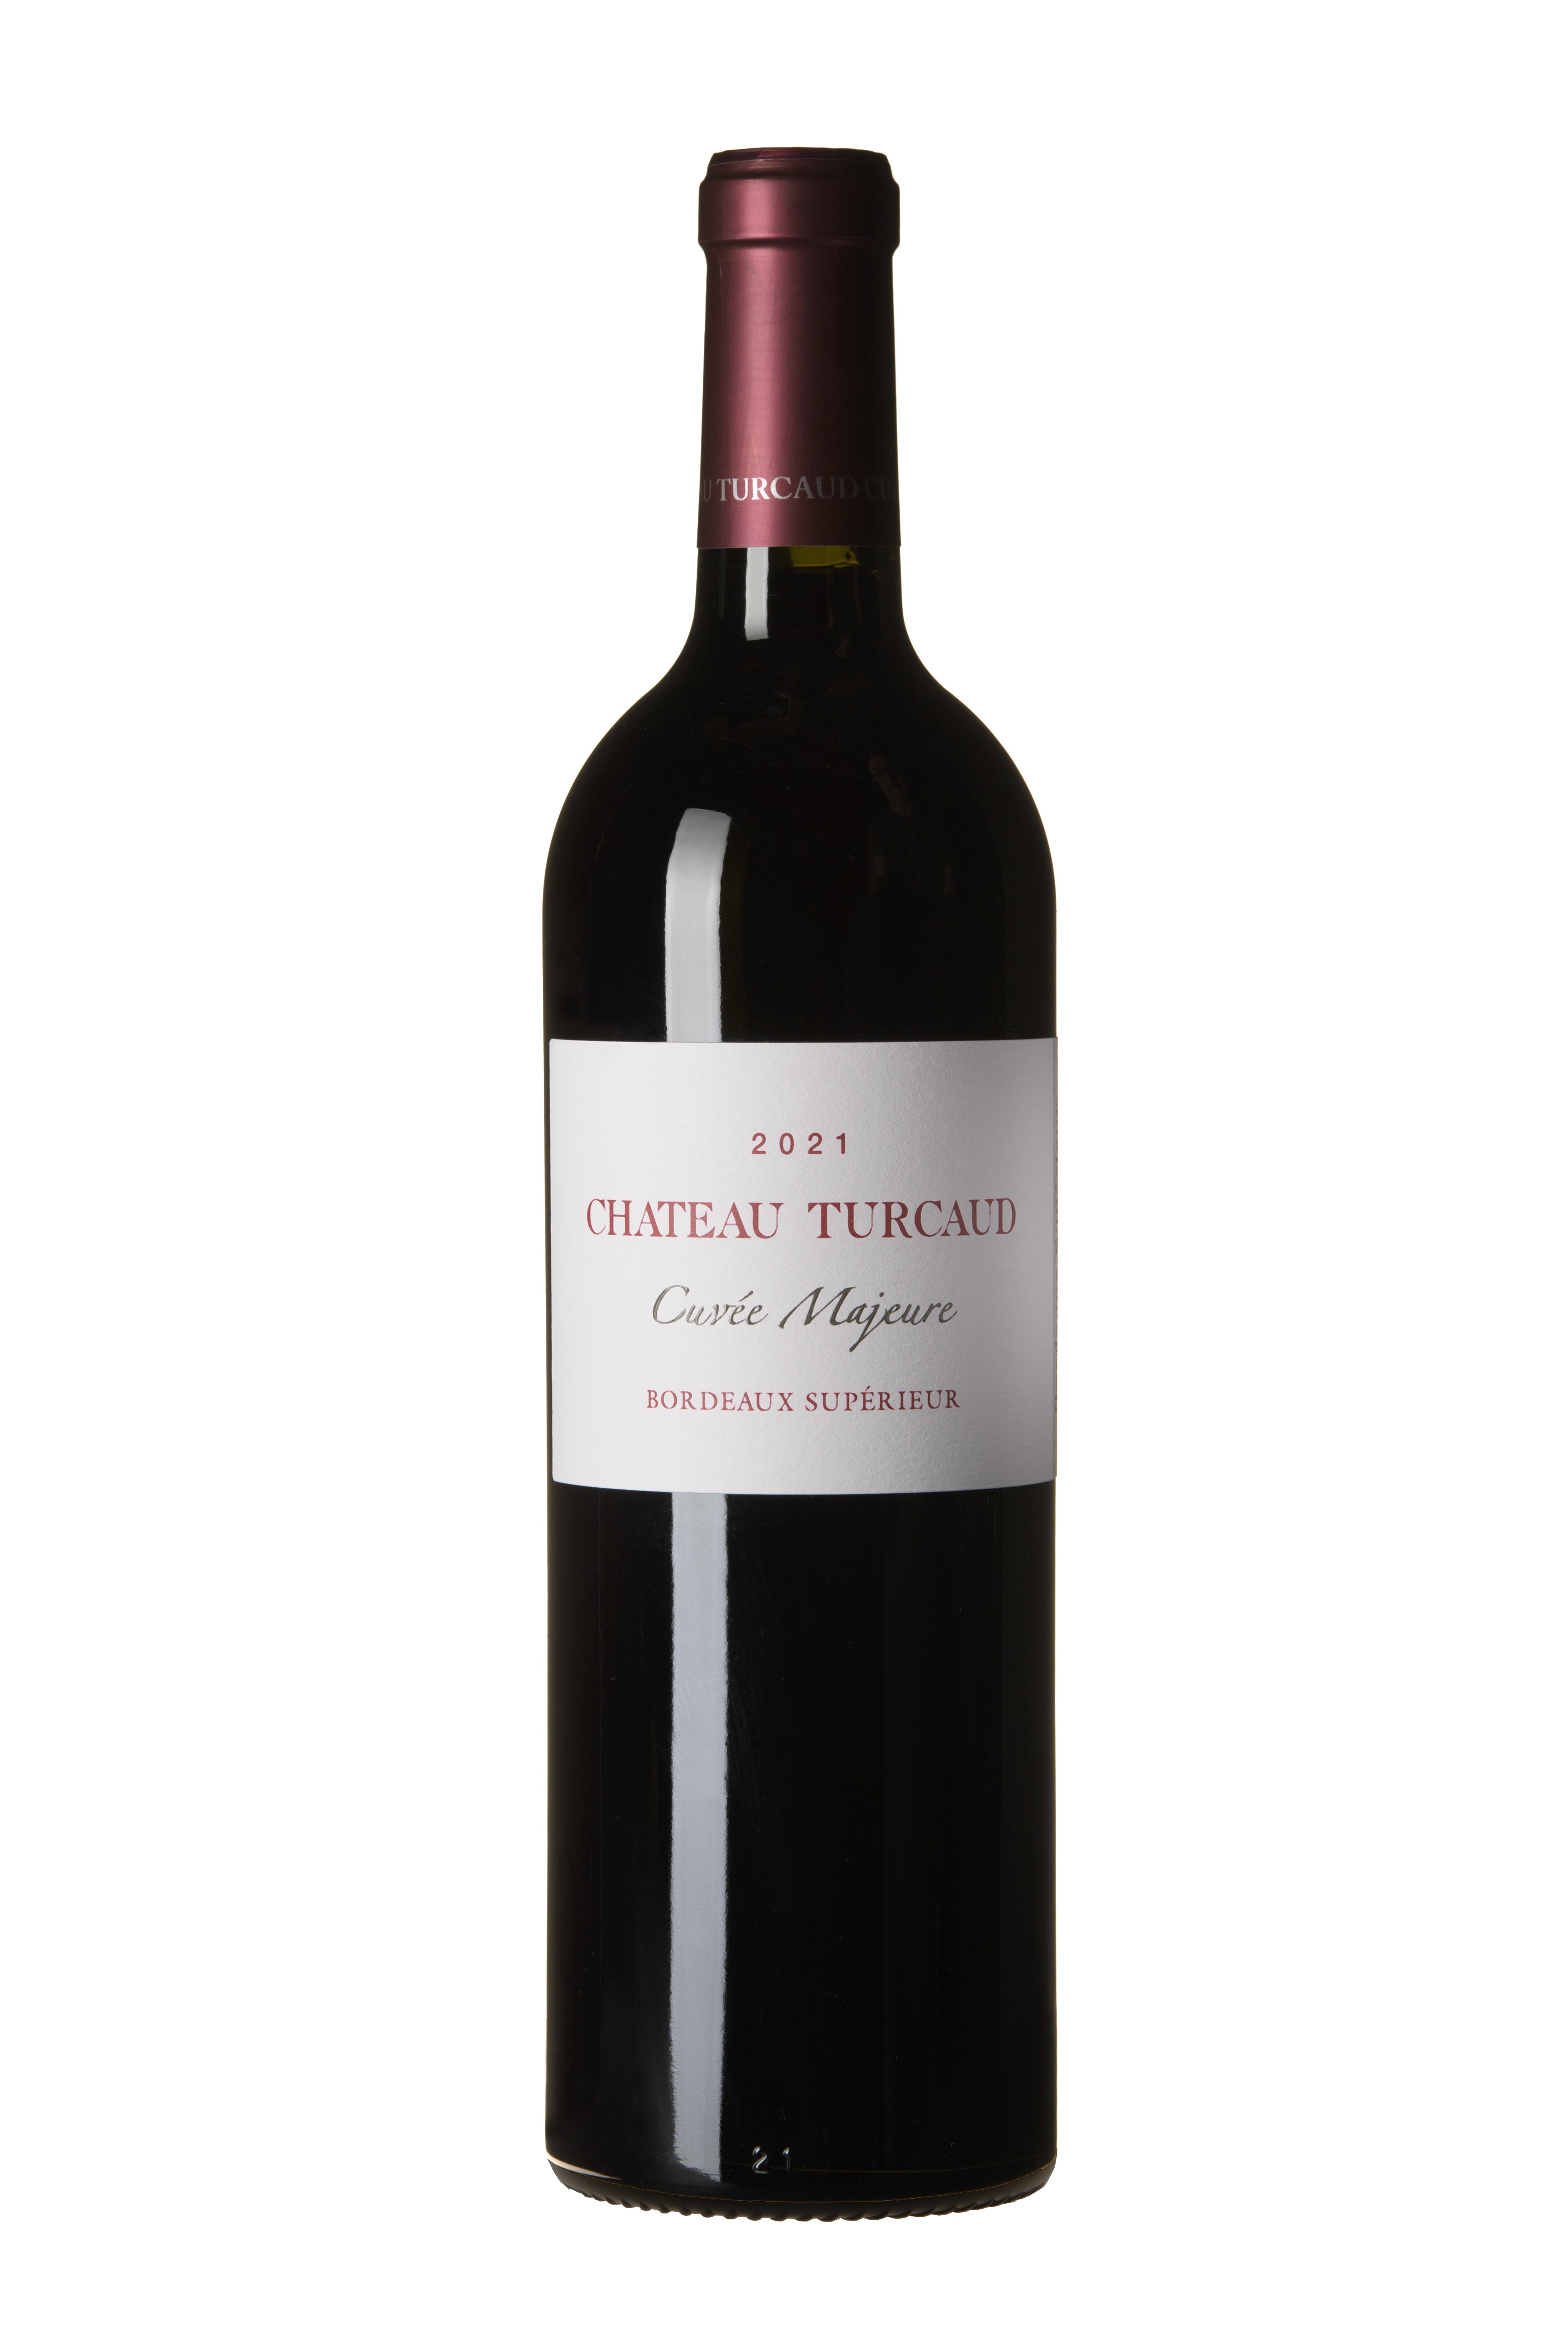 Vin rouge AOC Bordeaux 2020 en carton de 6 bouteilles